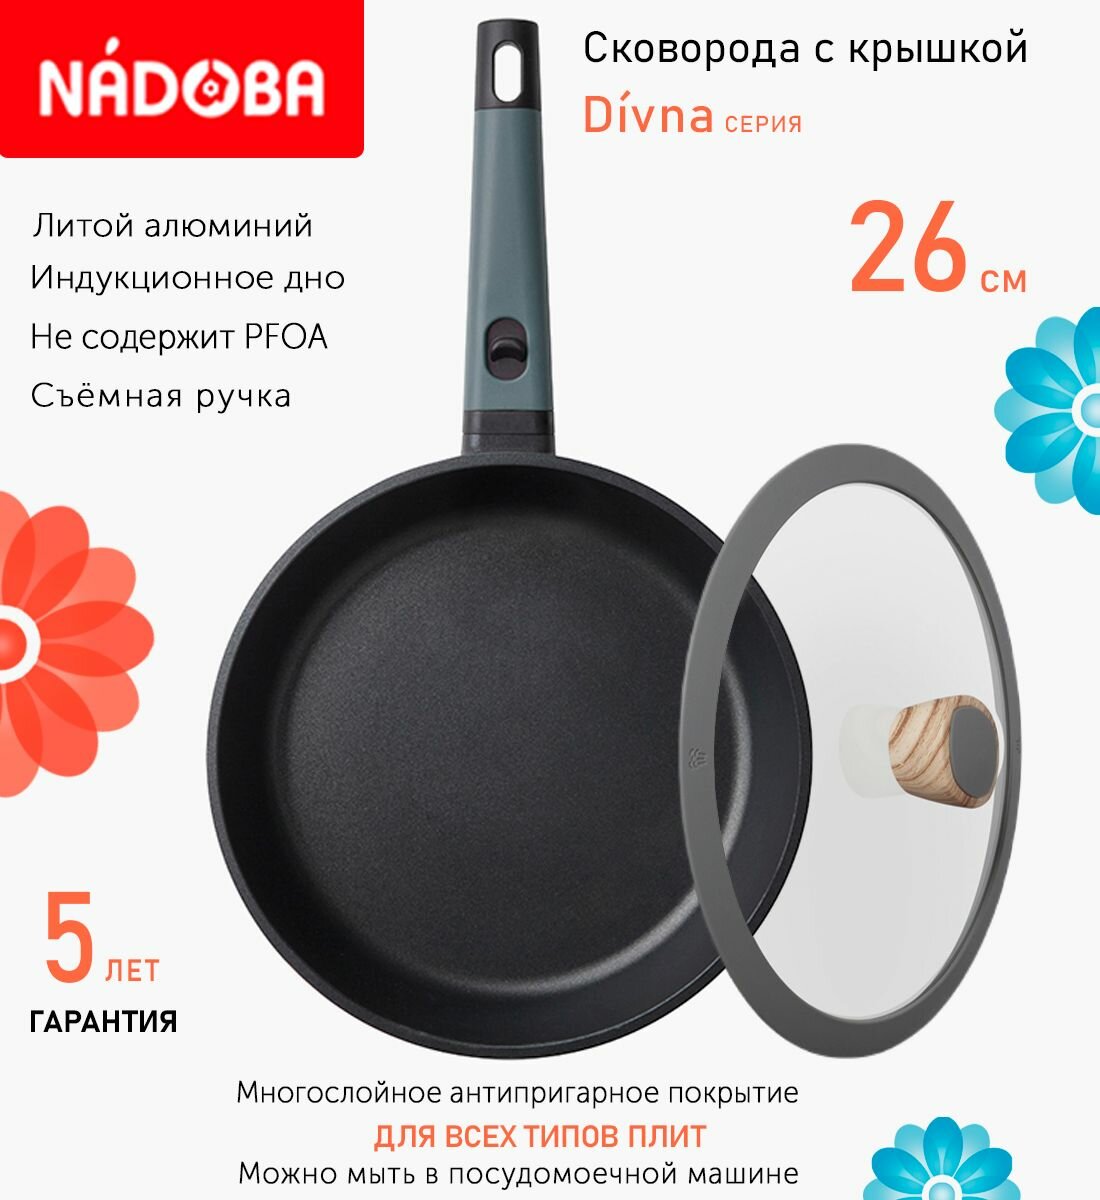 Сковорода с крышкой NADOBA 26см, серия "Divna" (арт. 729717/751212)